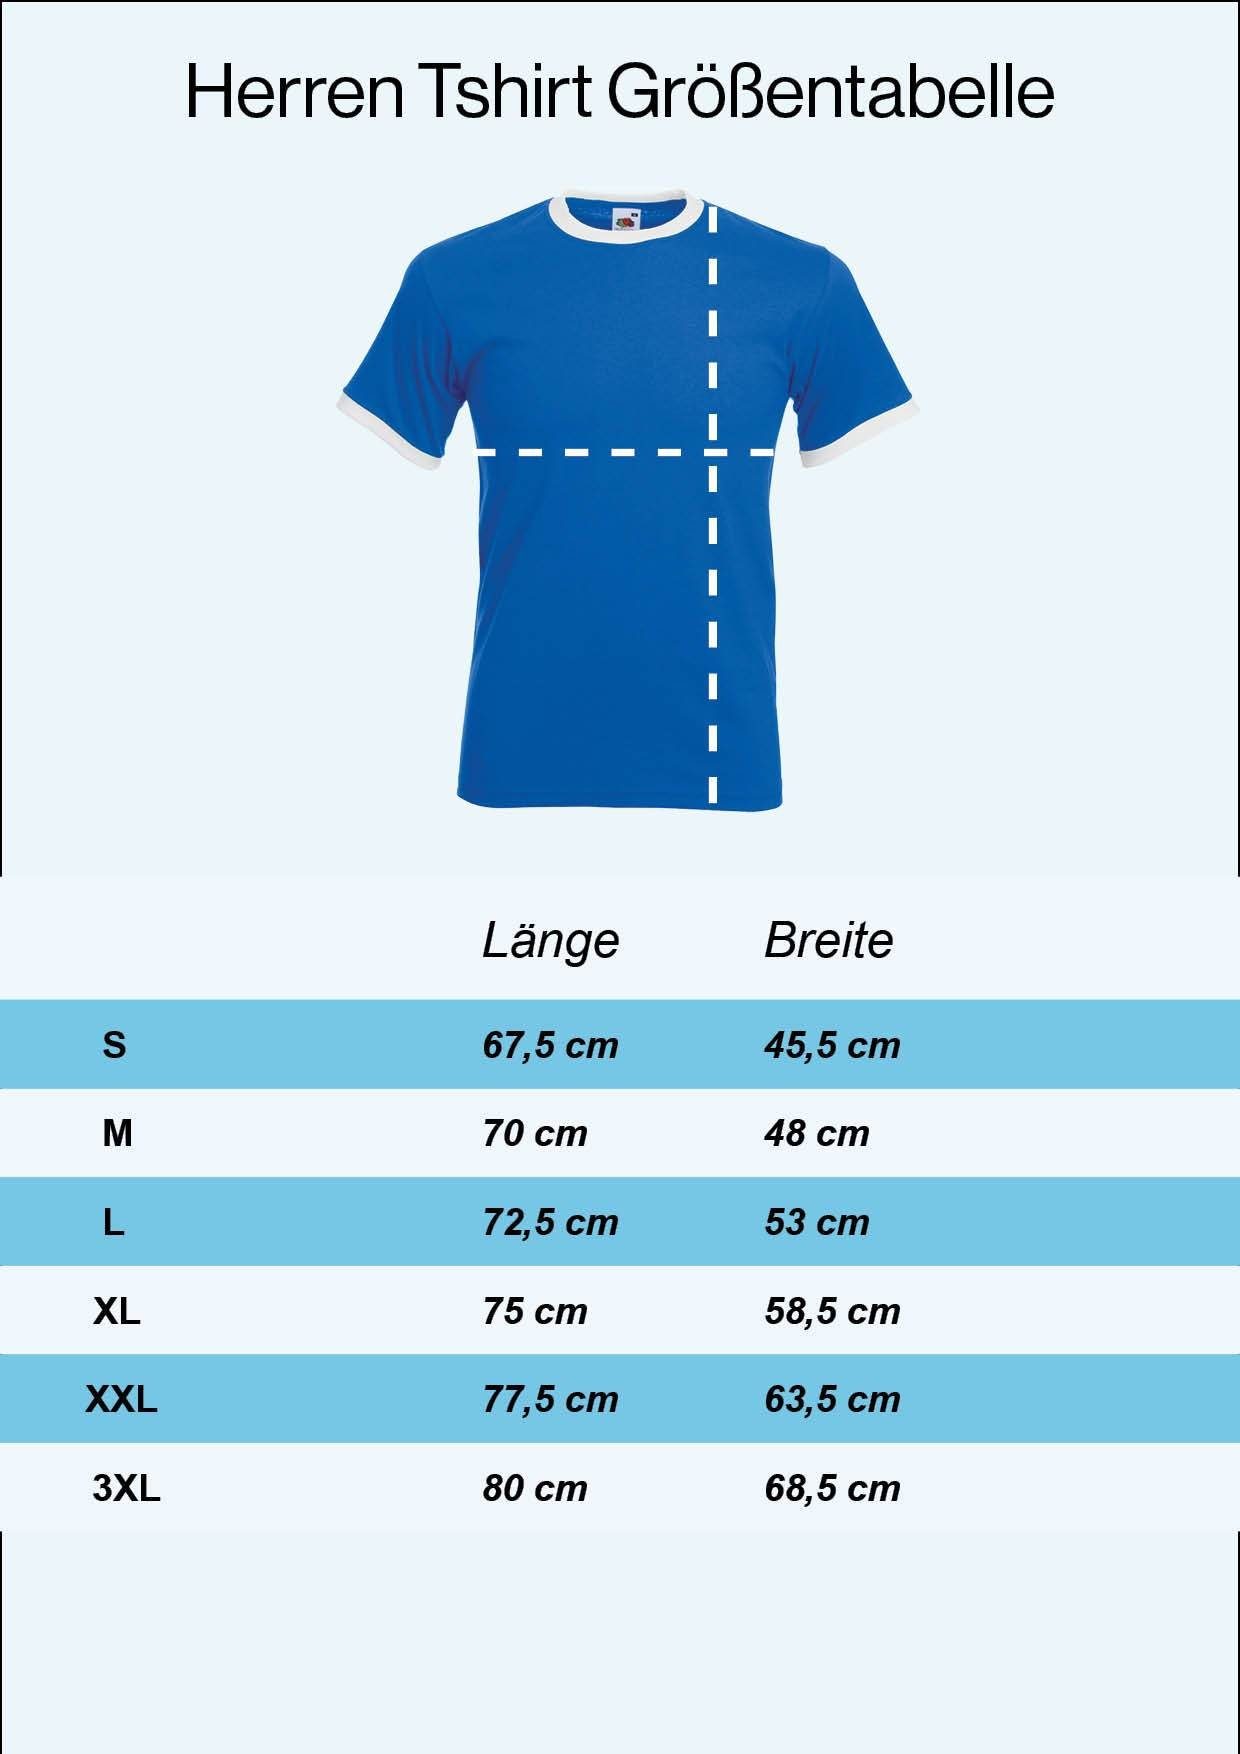 Youth Motiv Designz Herren mit Look Blau Trikot Fußball T-Shirt T-Shirt im Griechenland trendigem